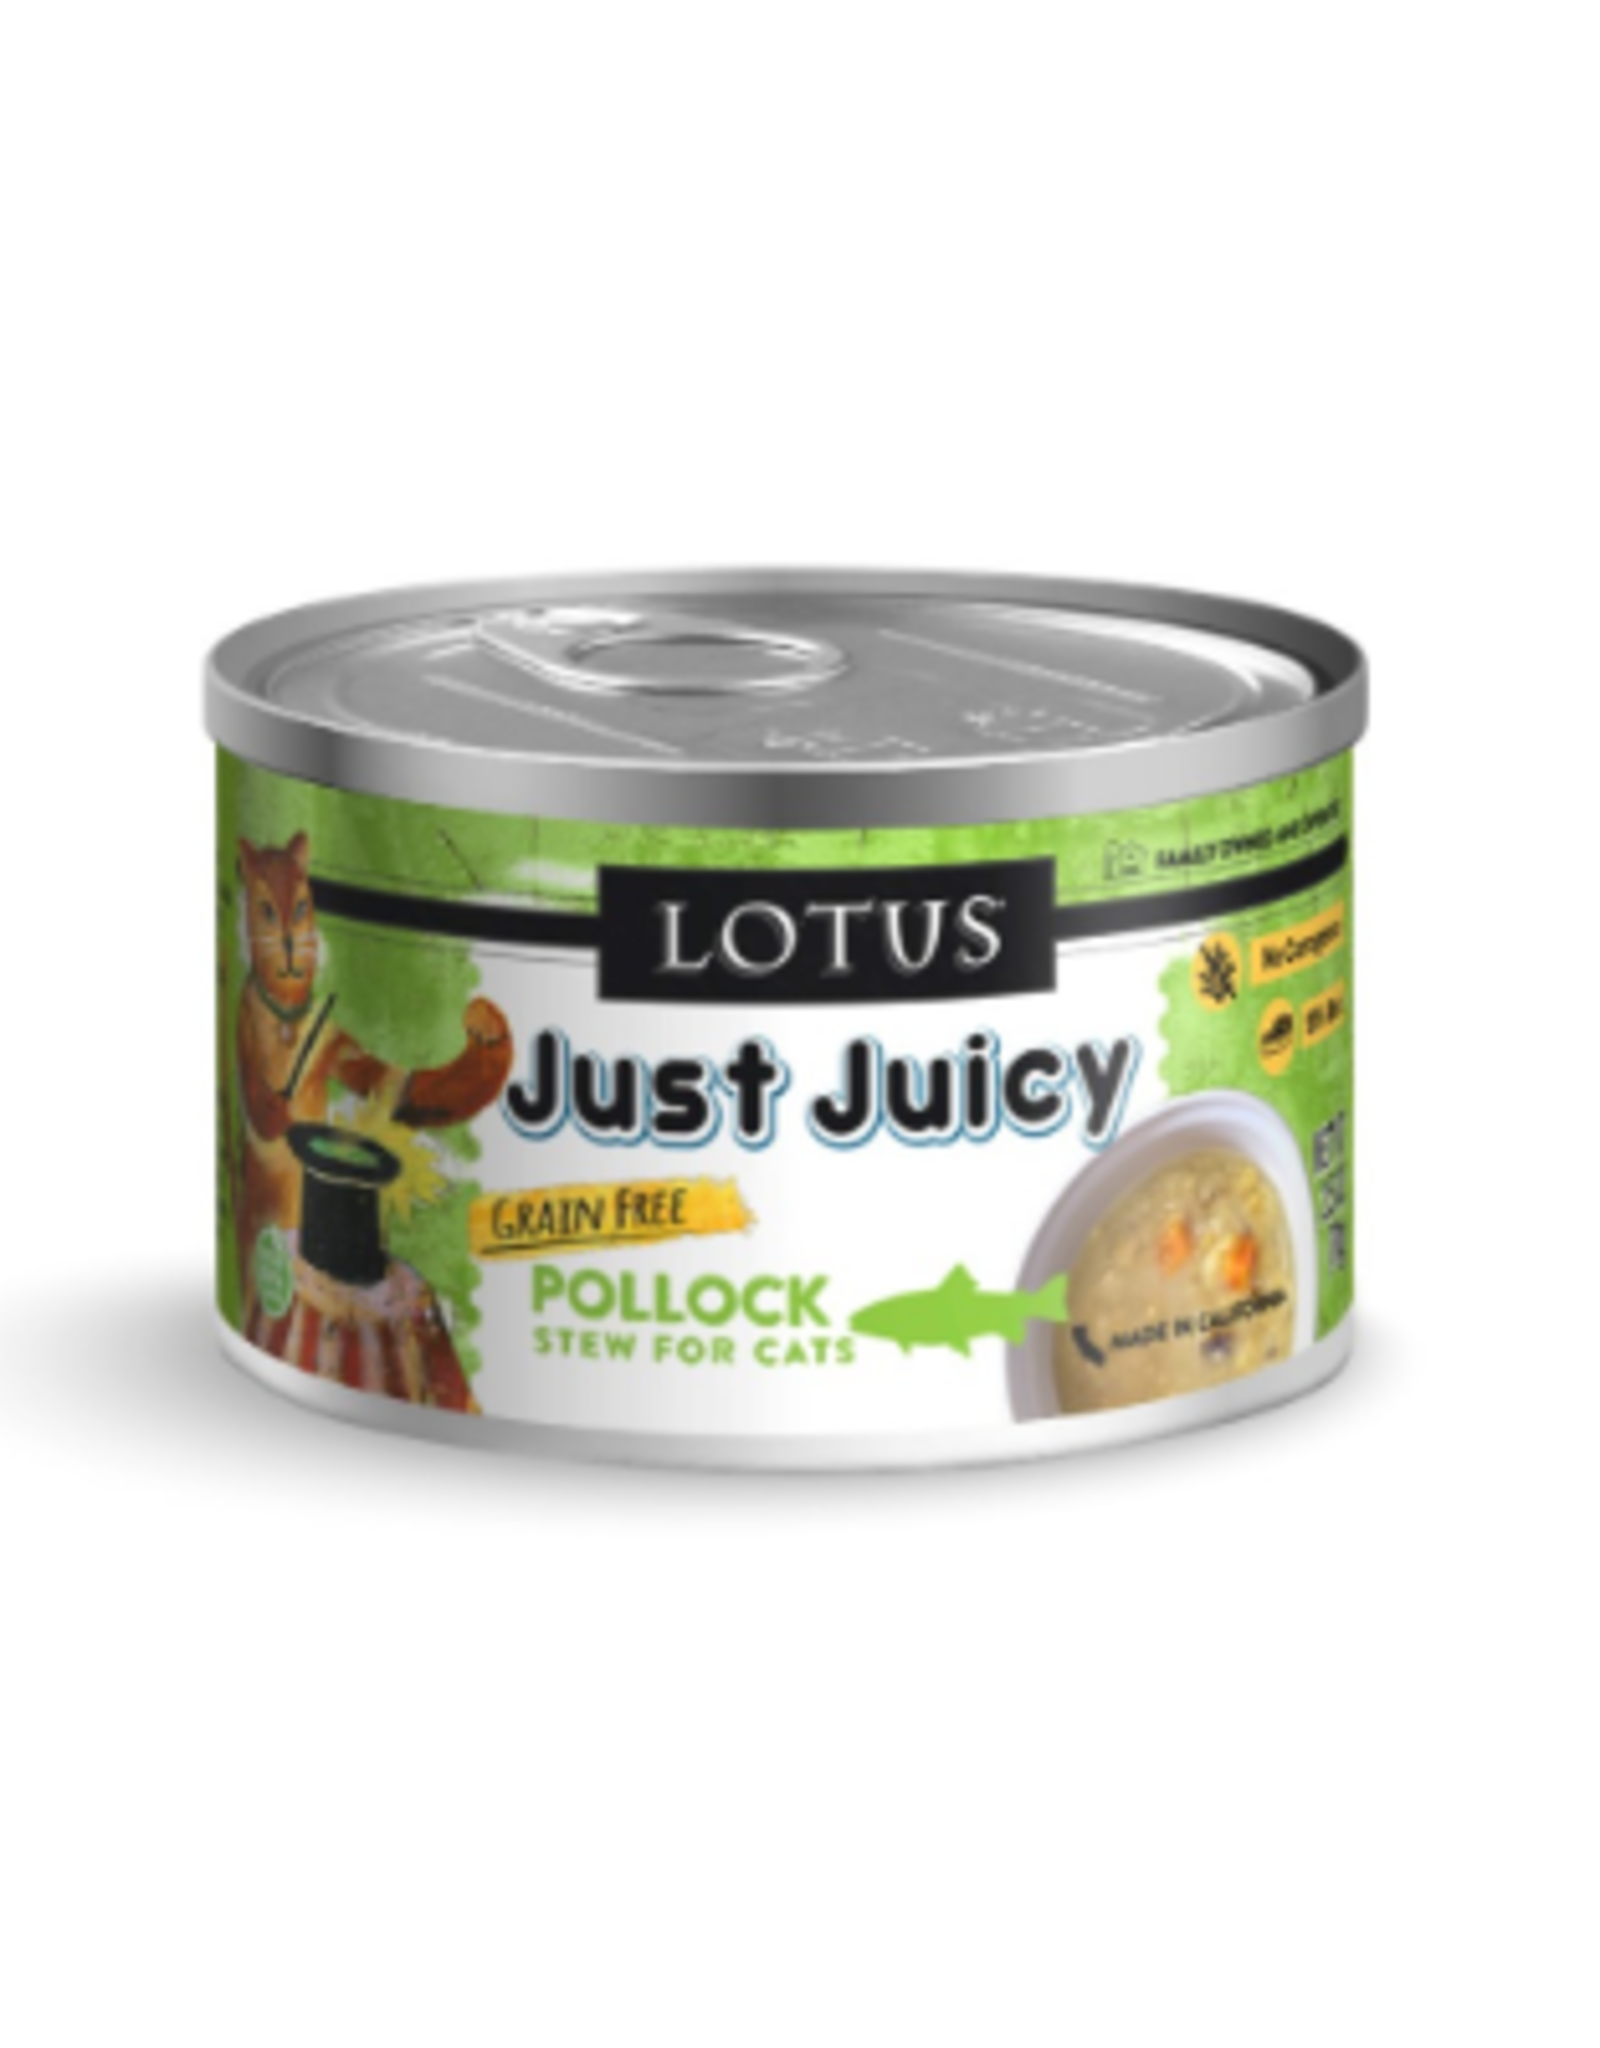 Lotus Lotus Just Juicy Pollock Stew Canned Cat 2.5 oz